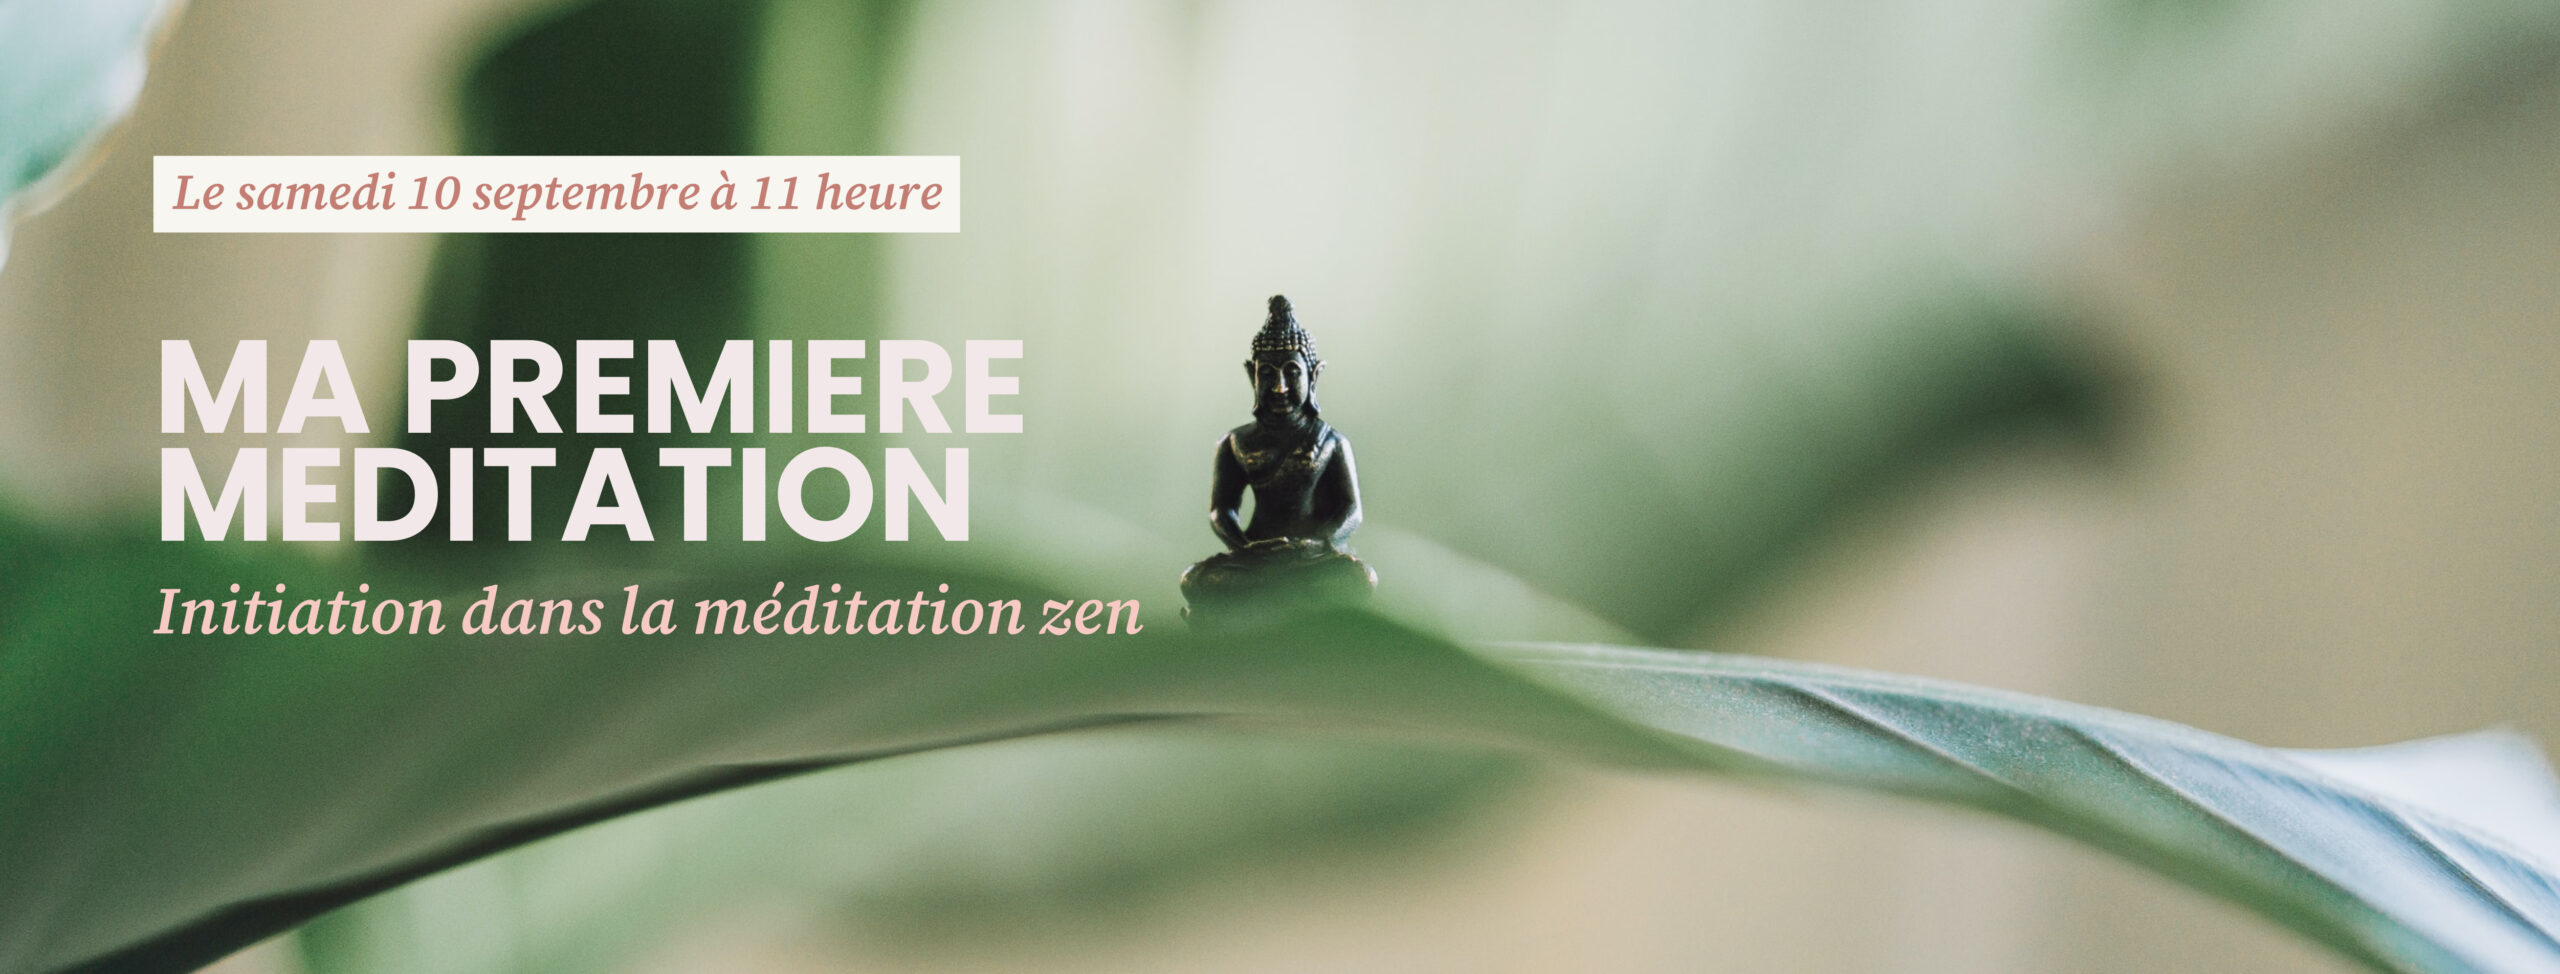 initiation dans le meditation zen